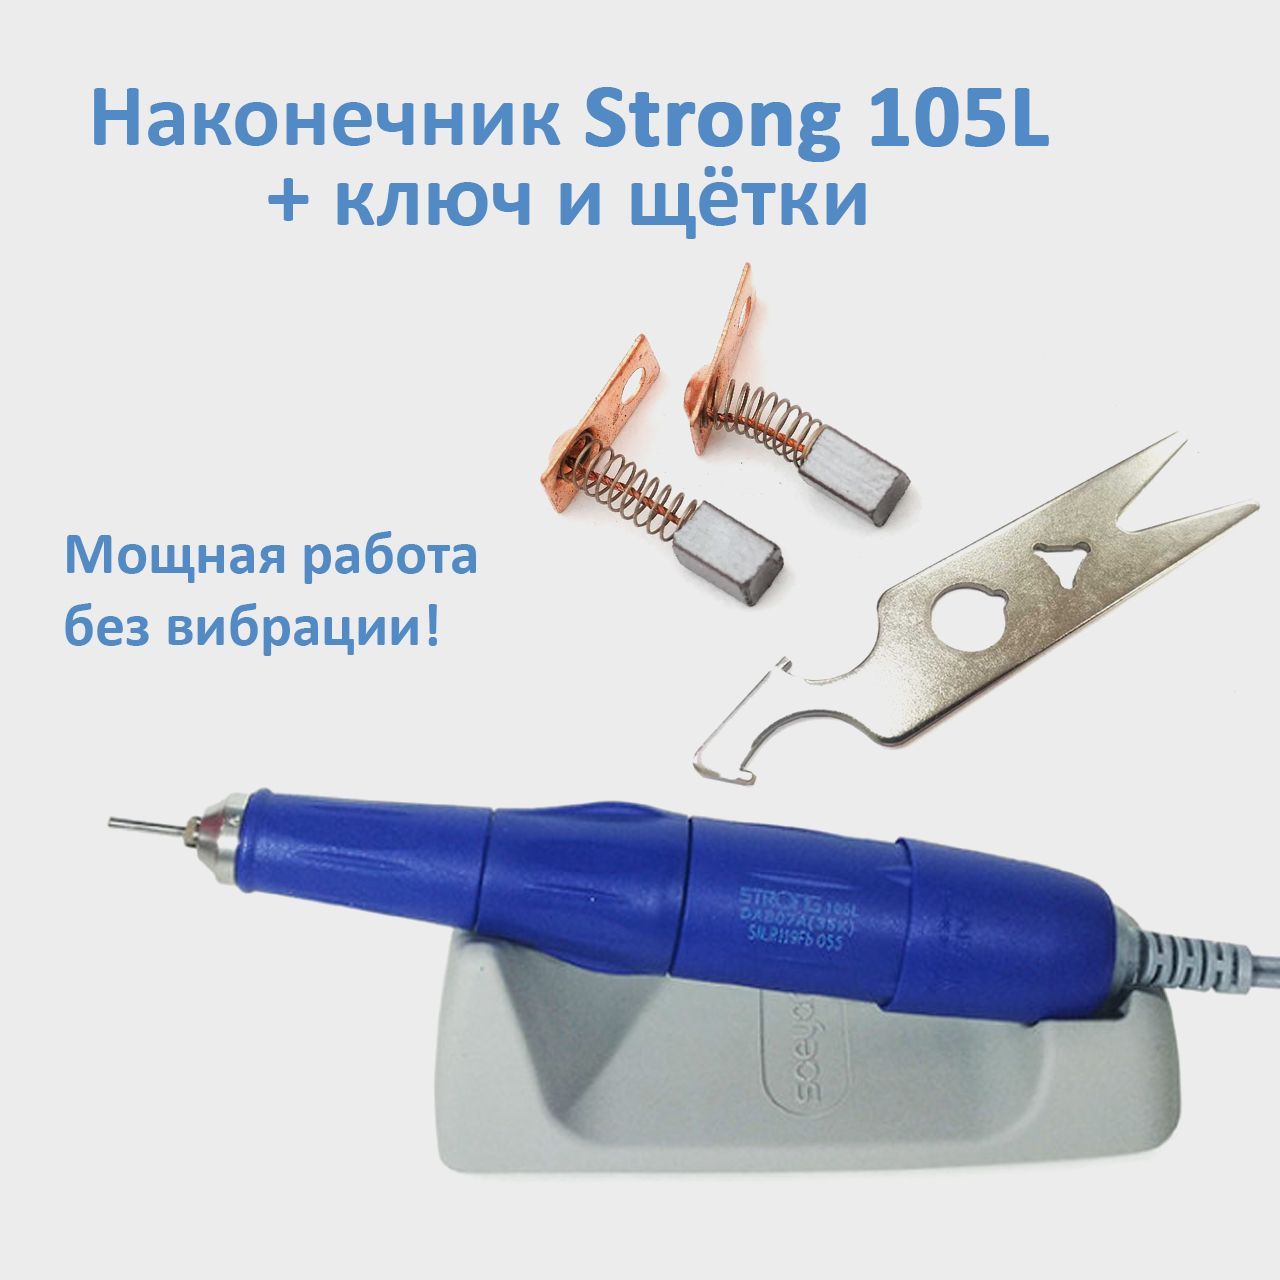 Ручка для маникюра Strong 105L 35000 оборотов, сменные щетки и ключ для наконечника С как лучик перестал драться